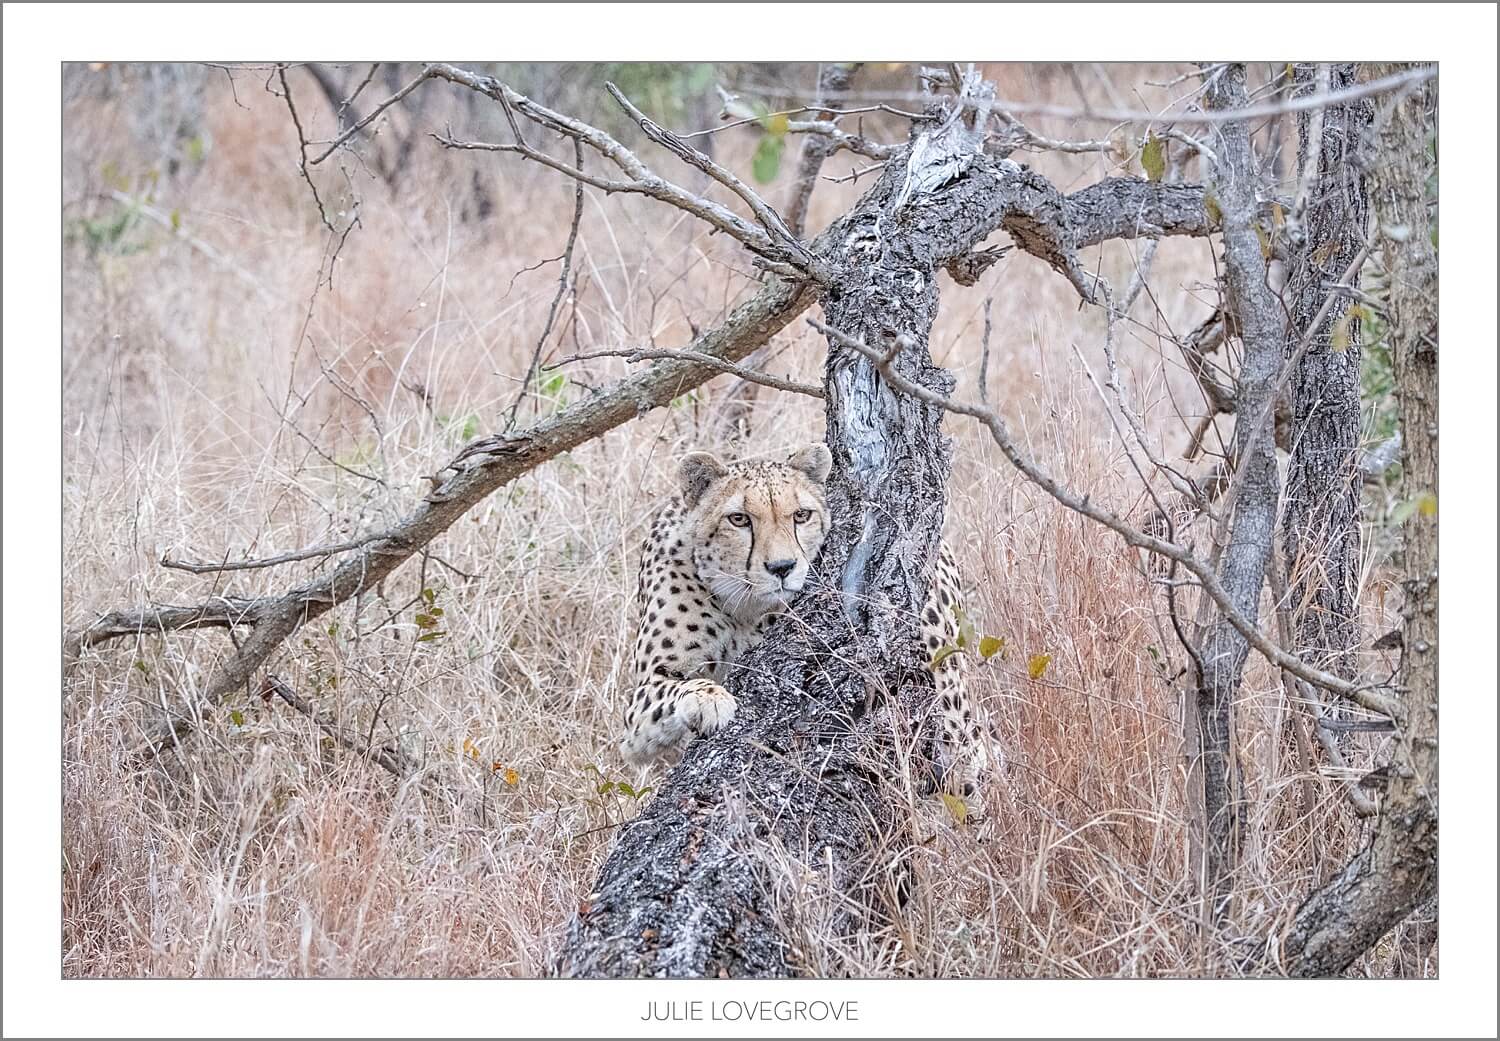 , Greater Kruger Safari